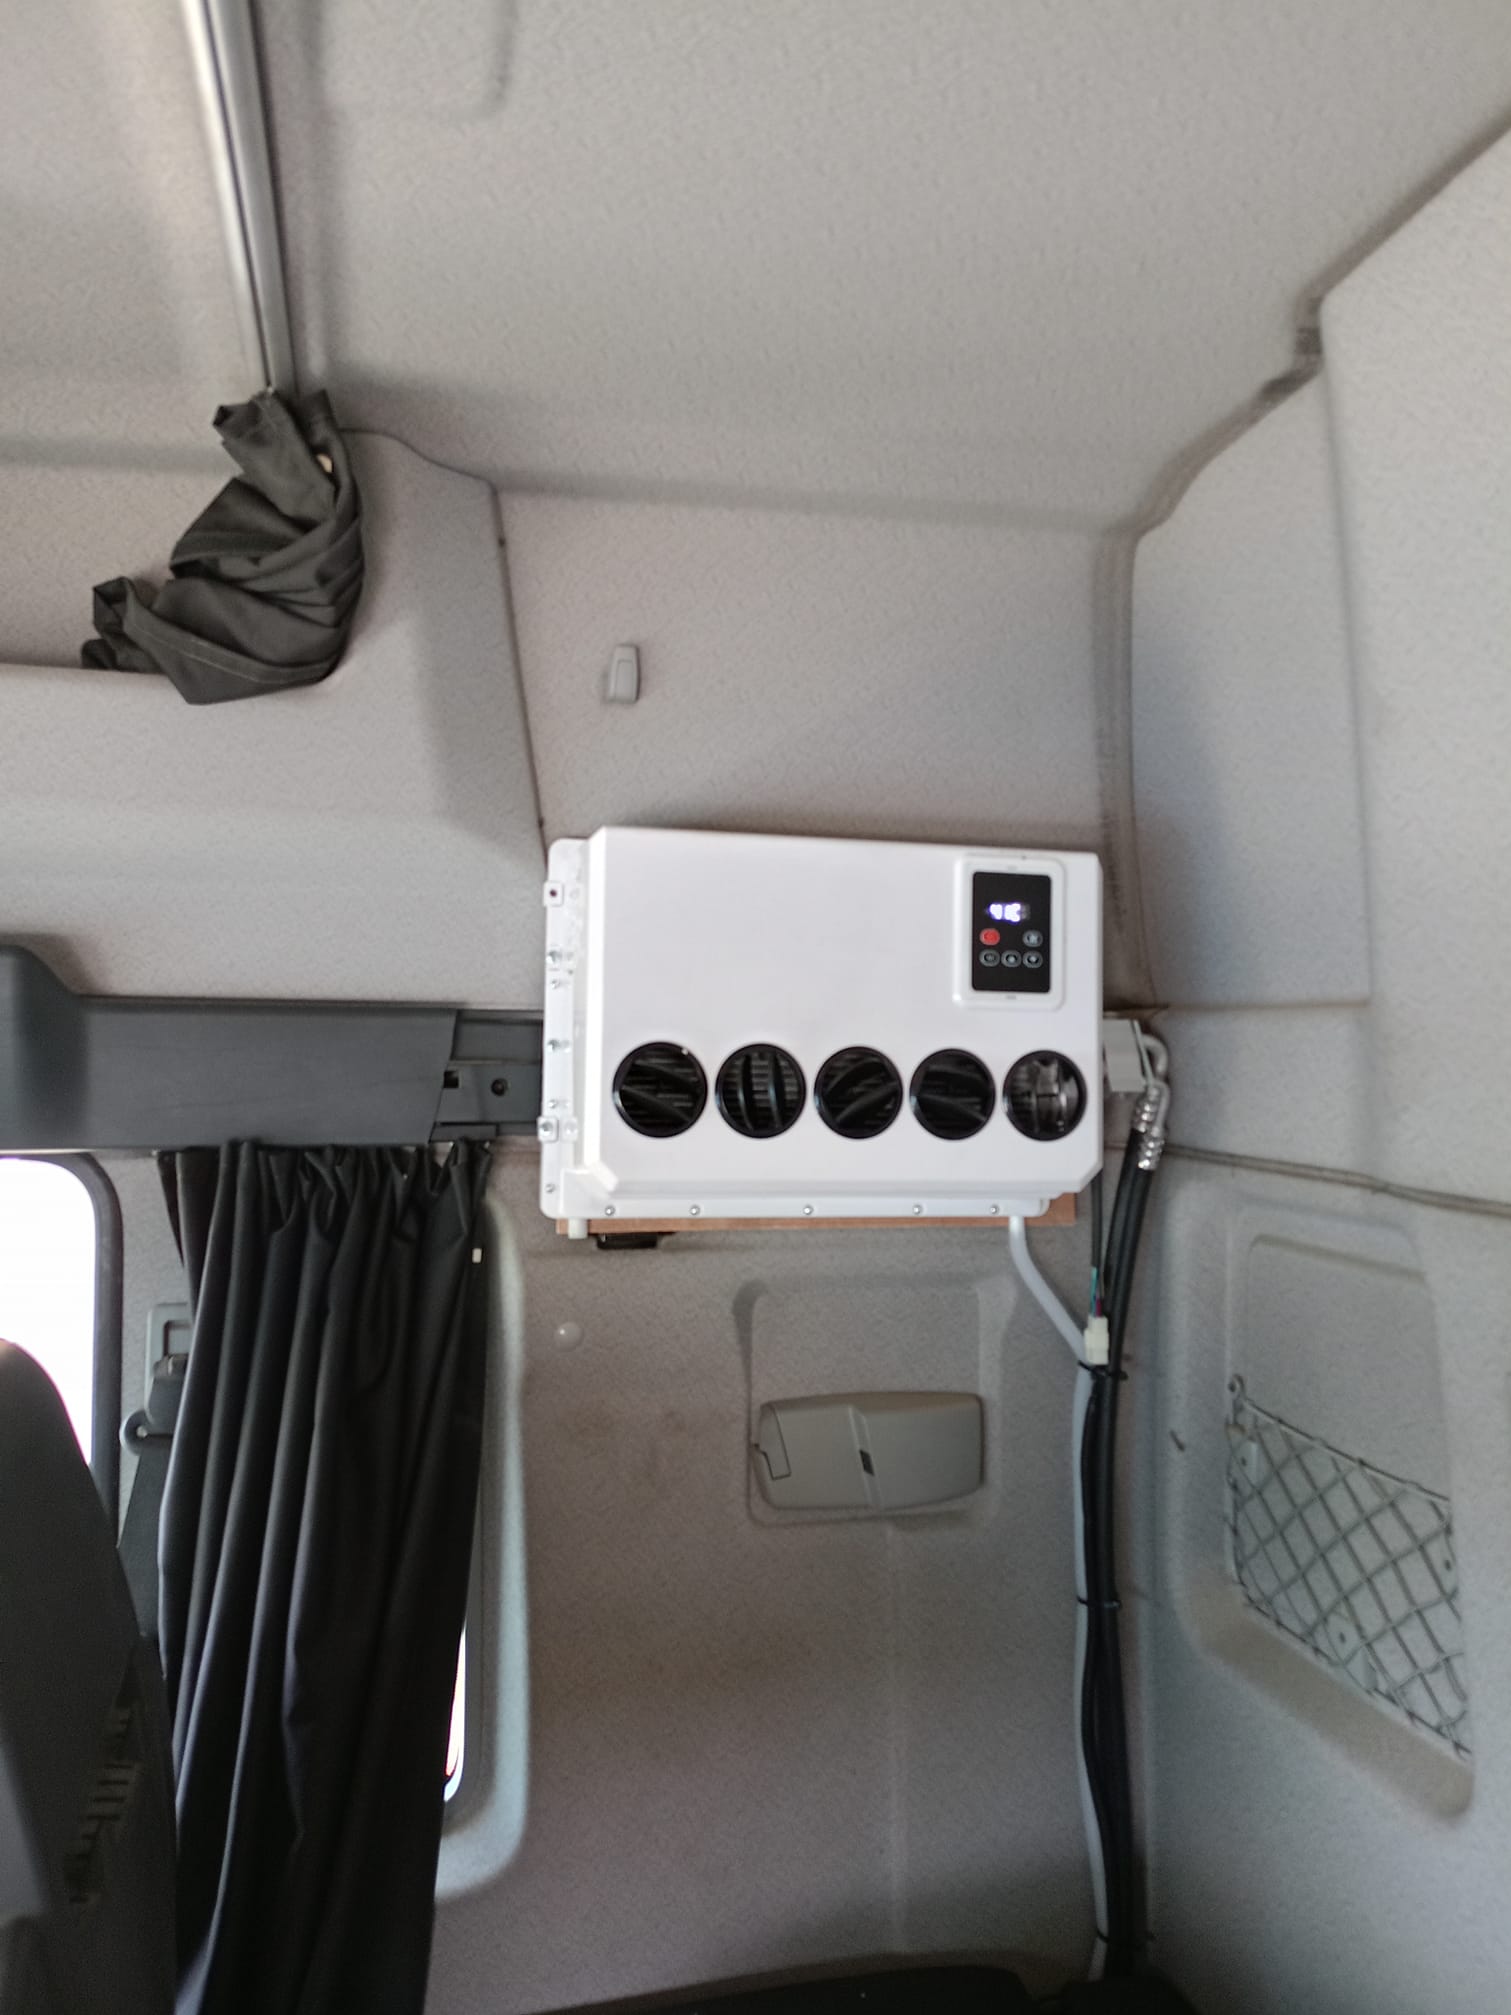 12V 24V Split Type Model Parking Air Conditioner for RV